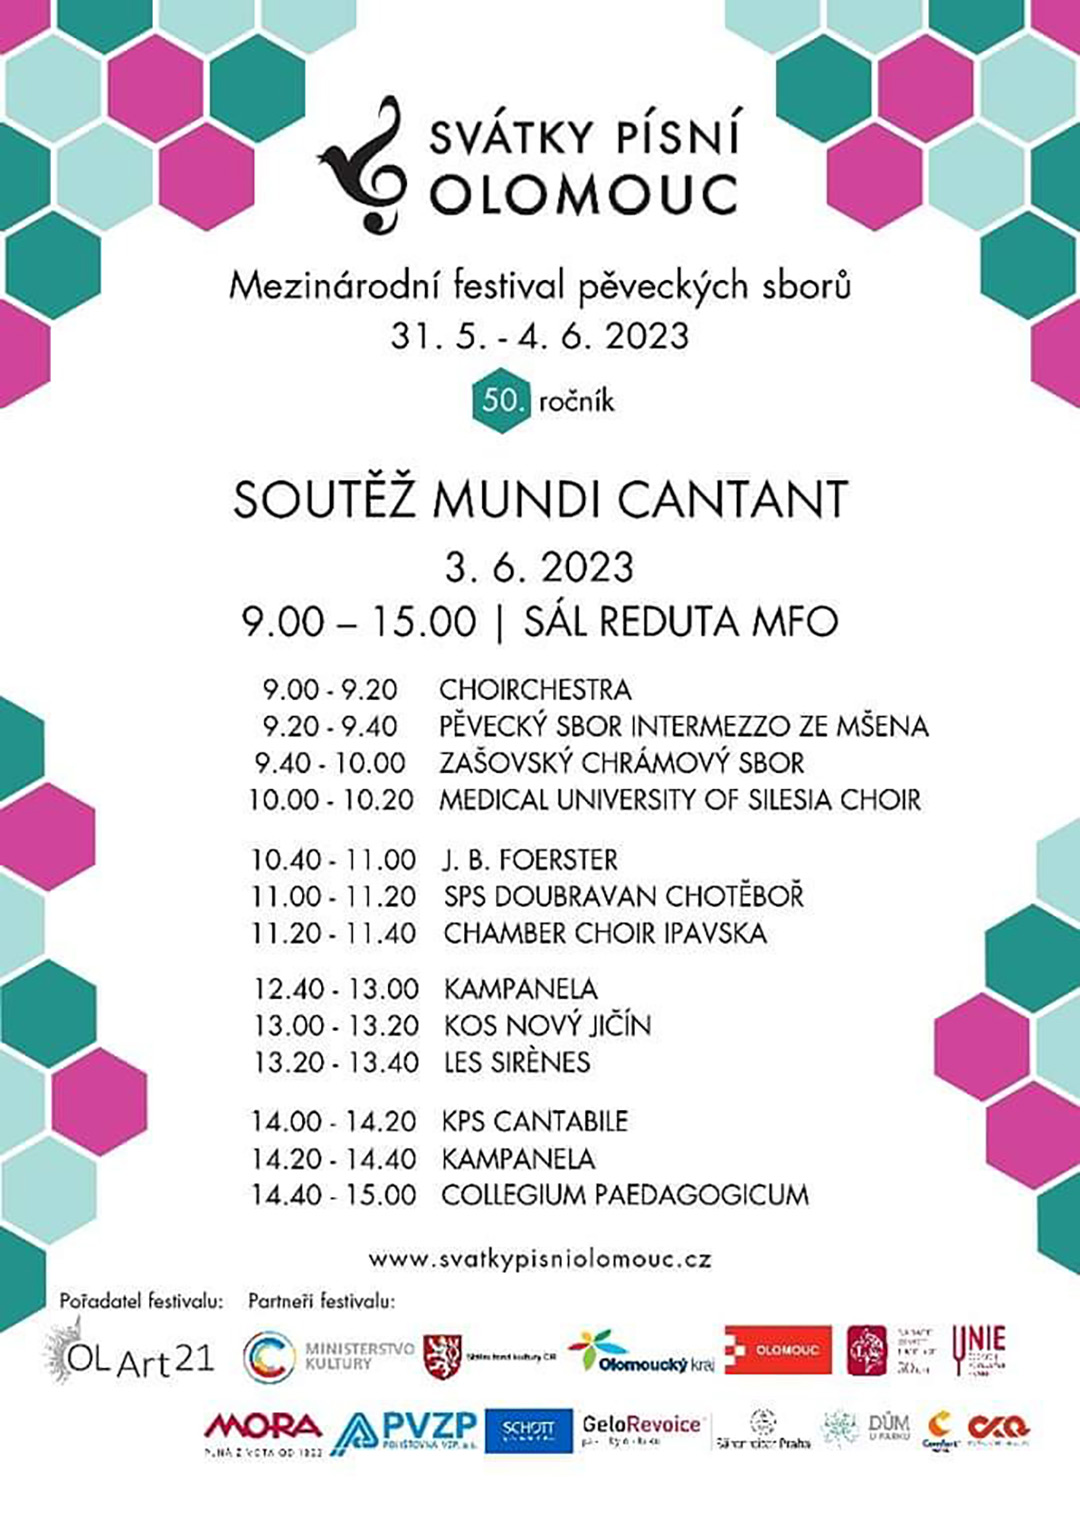 Svátky písní Olomouc, soutěžní festival